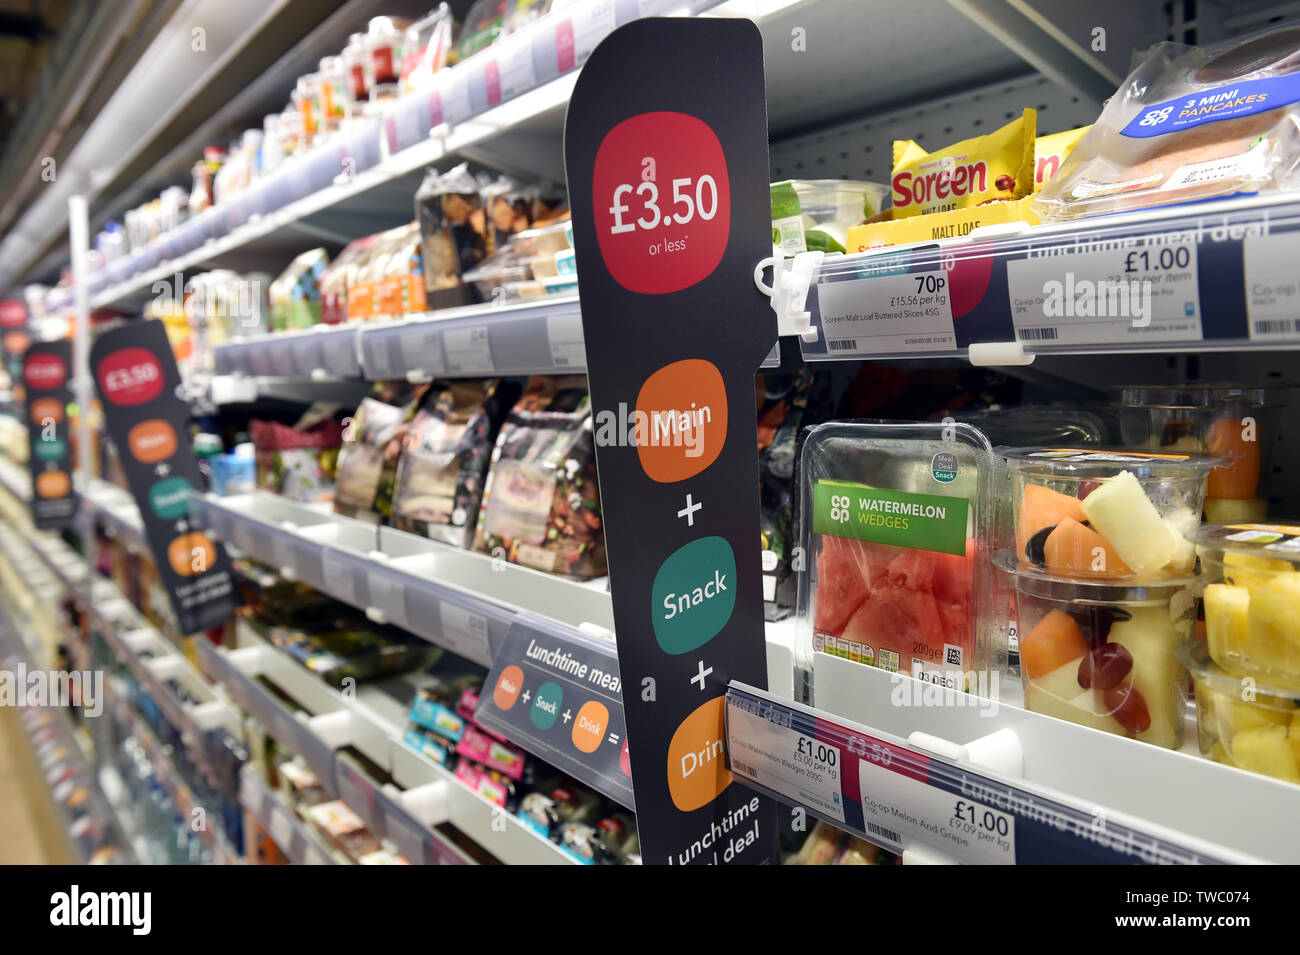 Speisen in einem Supermarkt Haupt, Snack und Getränk für 3,50 £Großbritannien Stockfoto